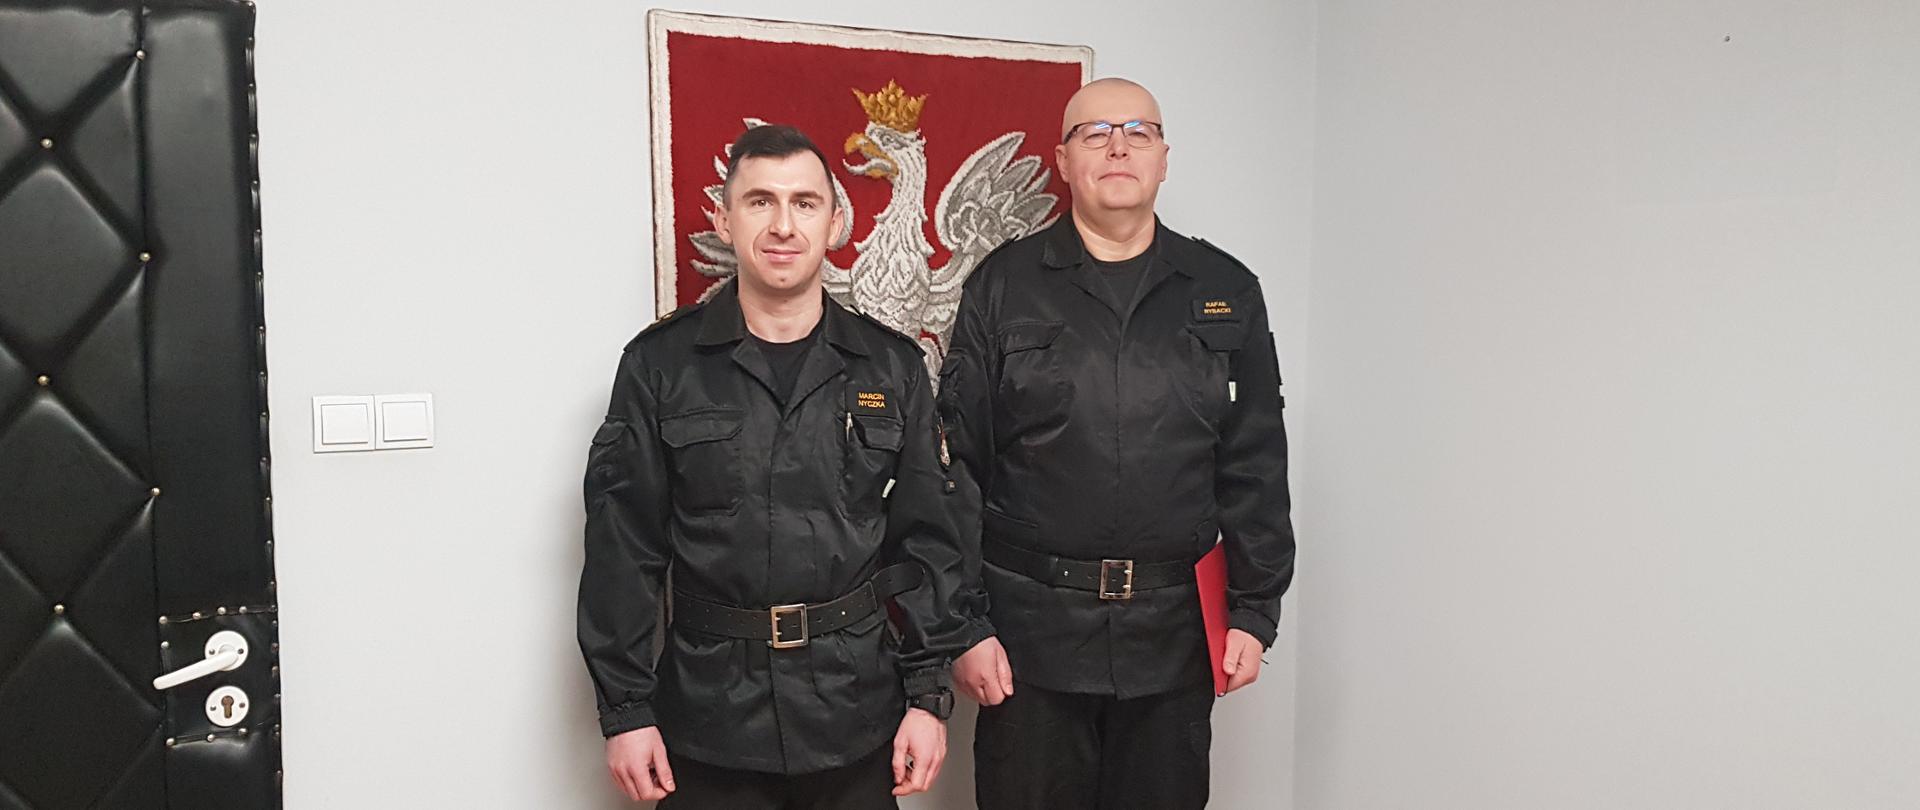 Zdjęcie przedstawia dwóch strażaków - Komendanta Powiatowego PSP oraz dowódcę JRG. Dowódca trzyma w ręce czerwoną teczkę. W tle, na ścianie, znajduje się Godło Polski.